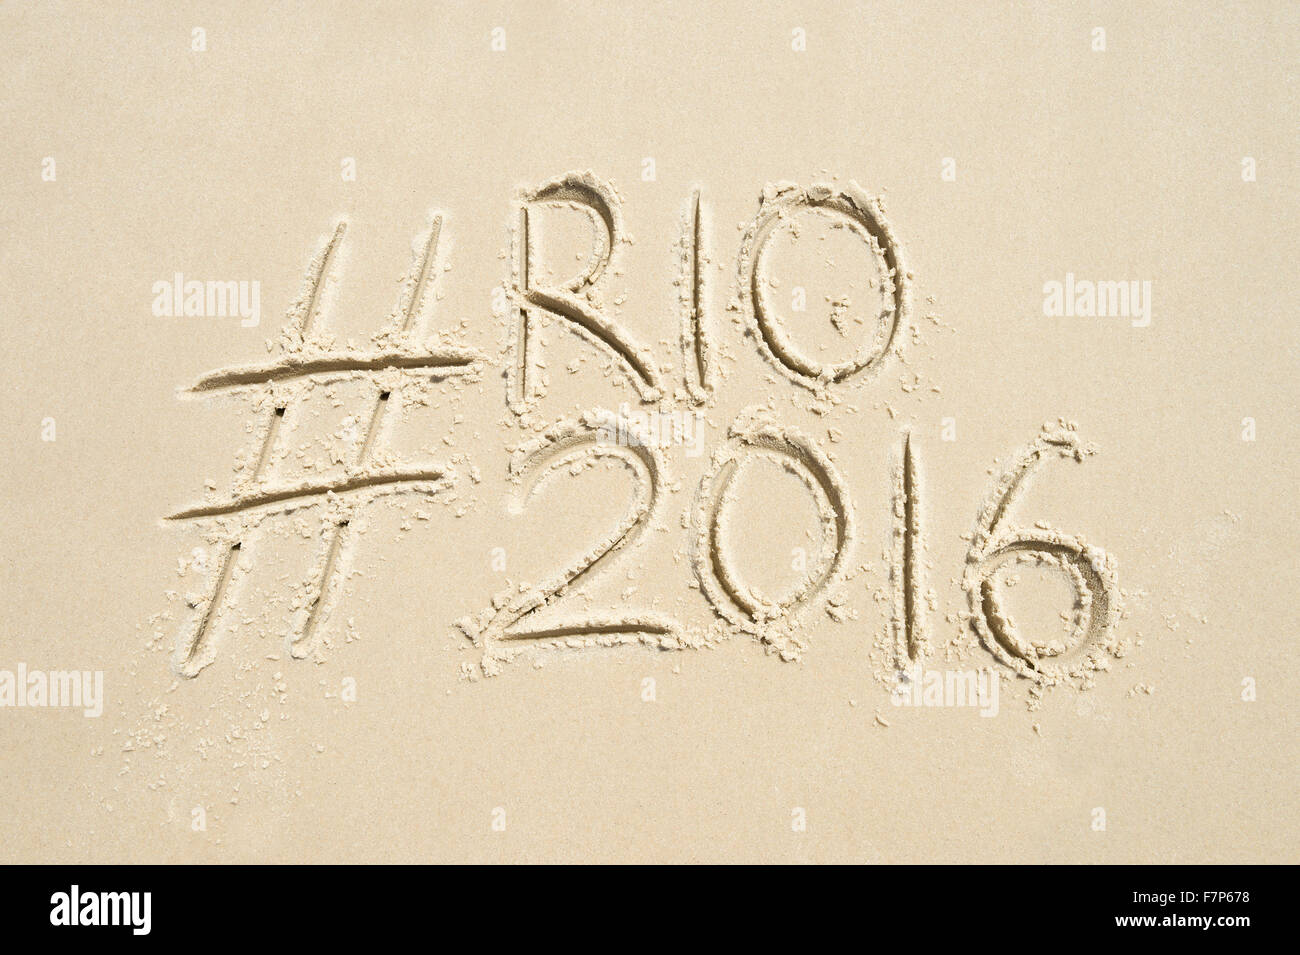 RIO DE JANEIRO, Brasilien - 10. November 2015: Handschriftliche Hashtag-social Media-Nachricht für die Rio 2016 Olympics in Sand geschrieben. Stockfoto